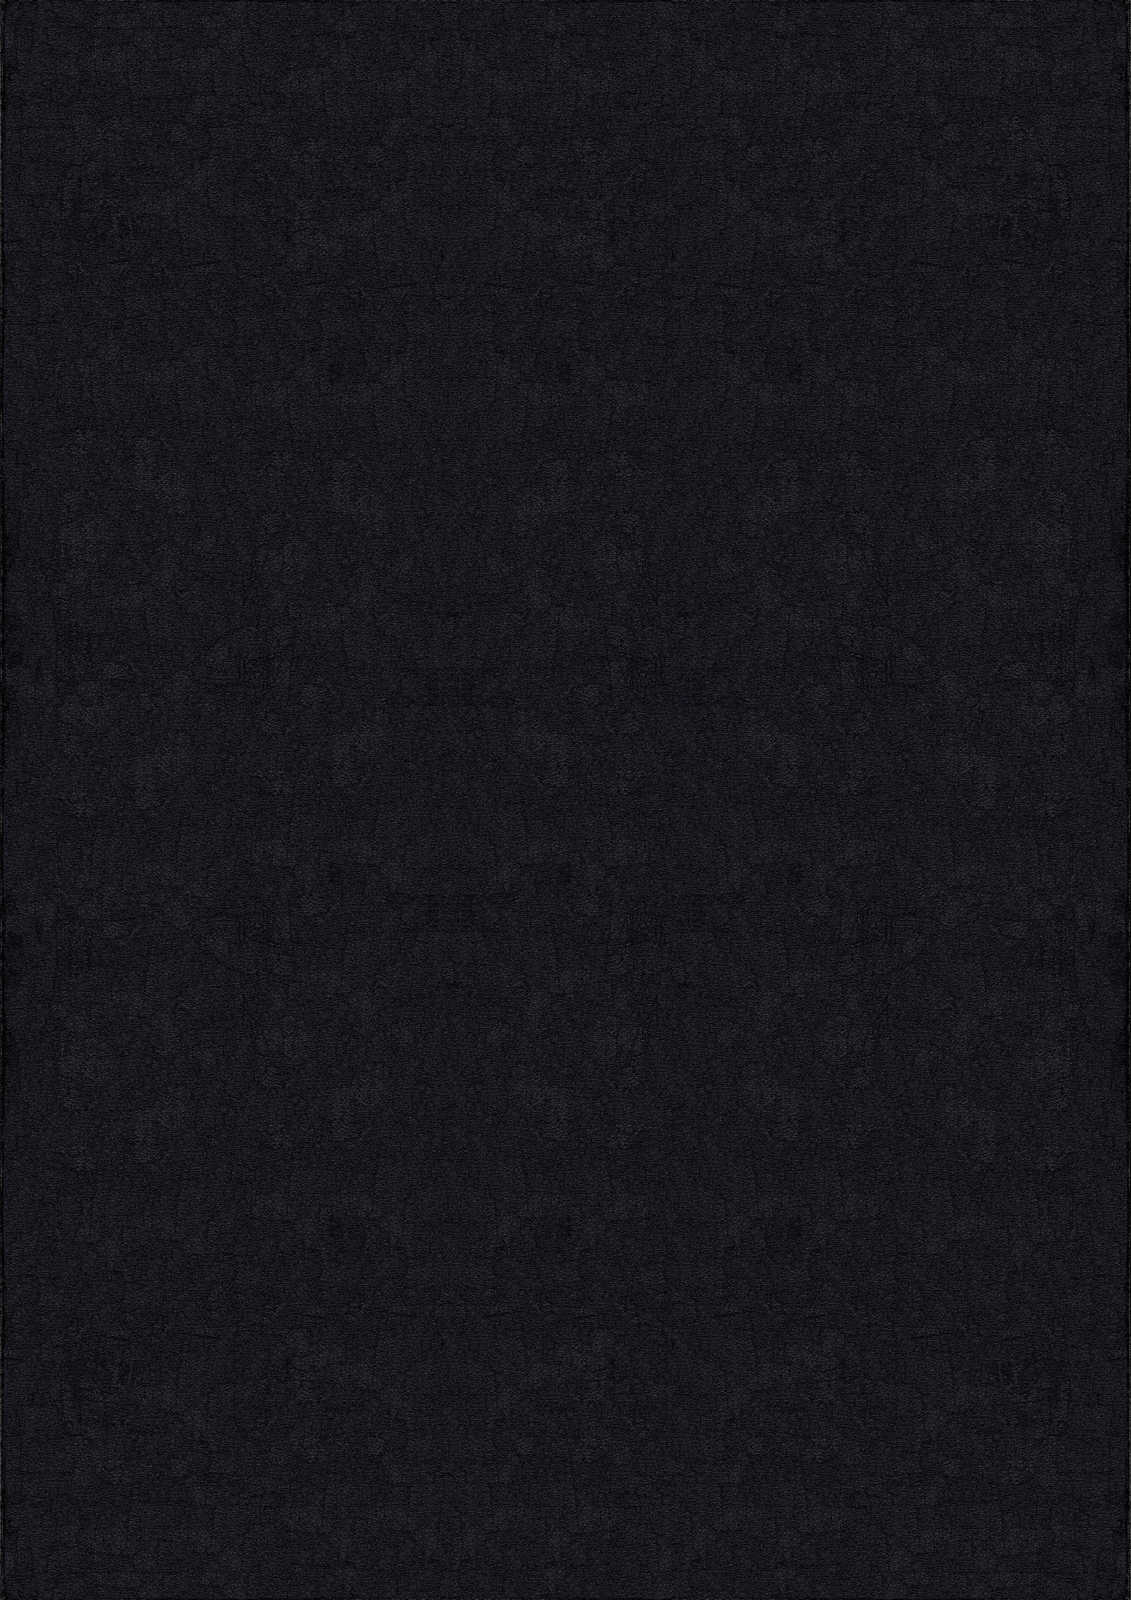             Tapis velouté à poils longs noir - 340 x 240 cm
        